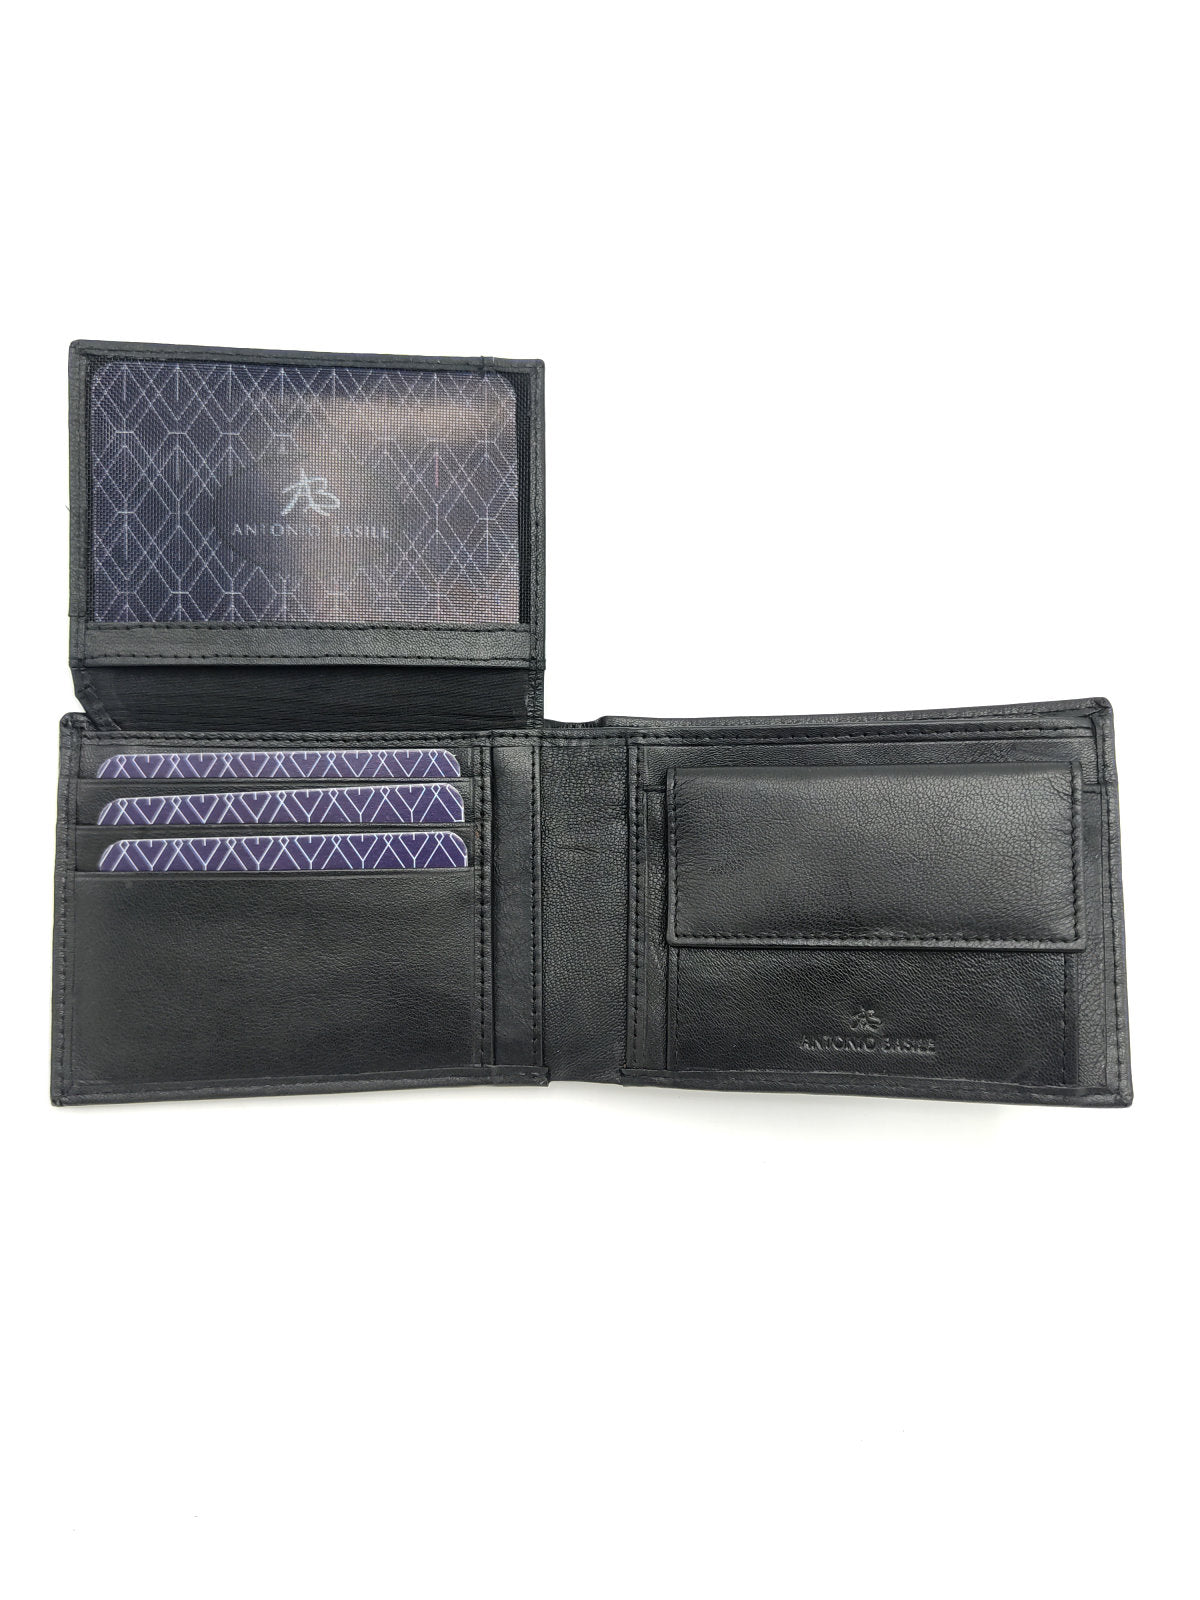 Scatola regalo portafoglio in pelle + cintura in pelle, per gli uomini, marchio Antonio Basile, art.  1123-CINT.422